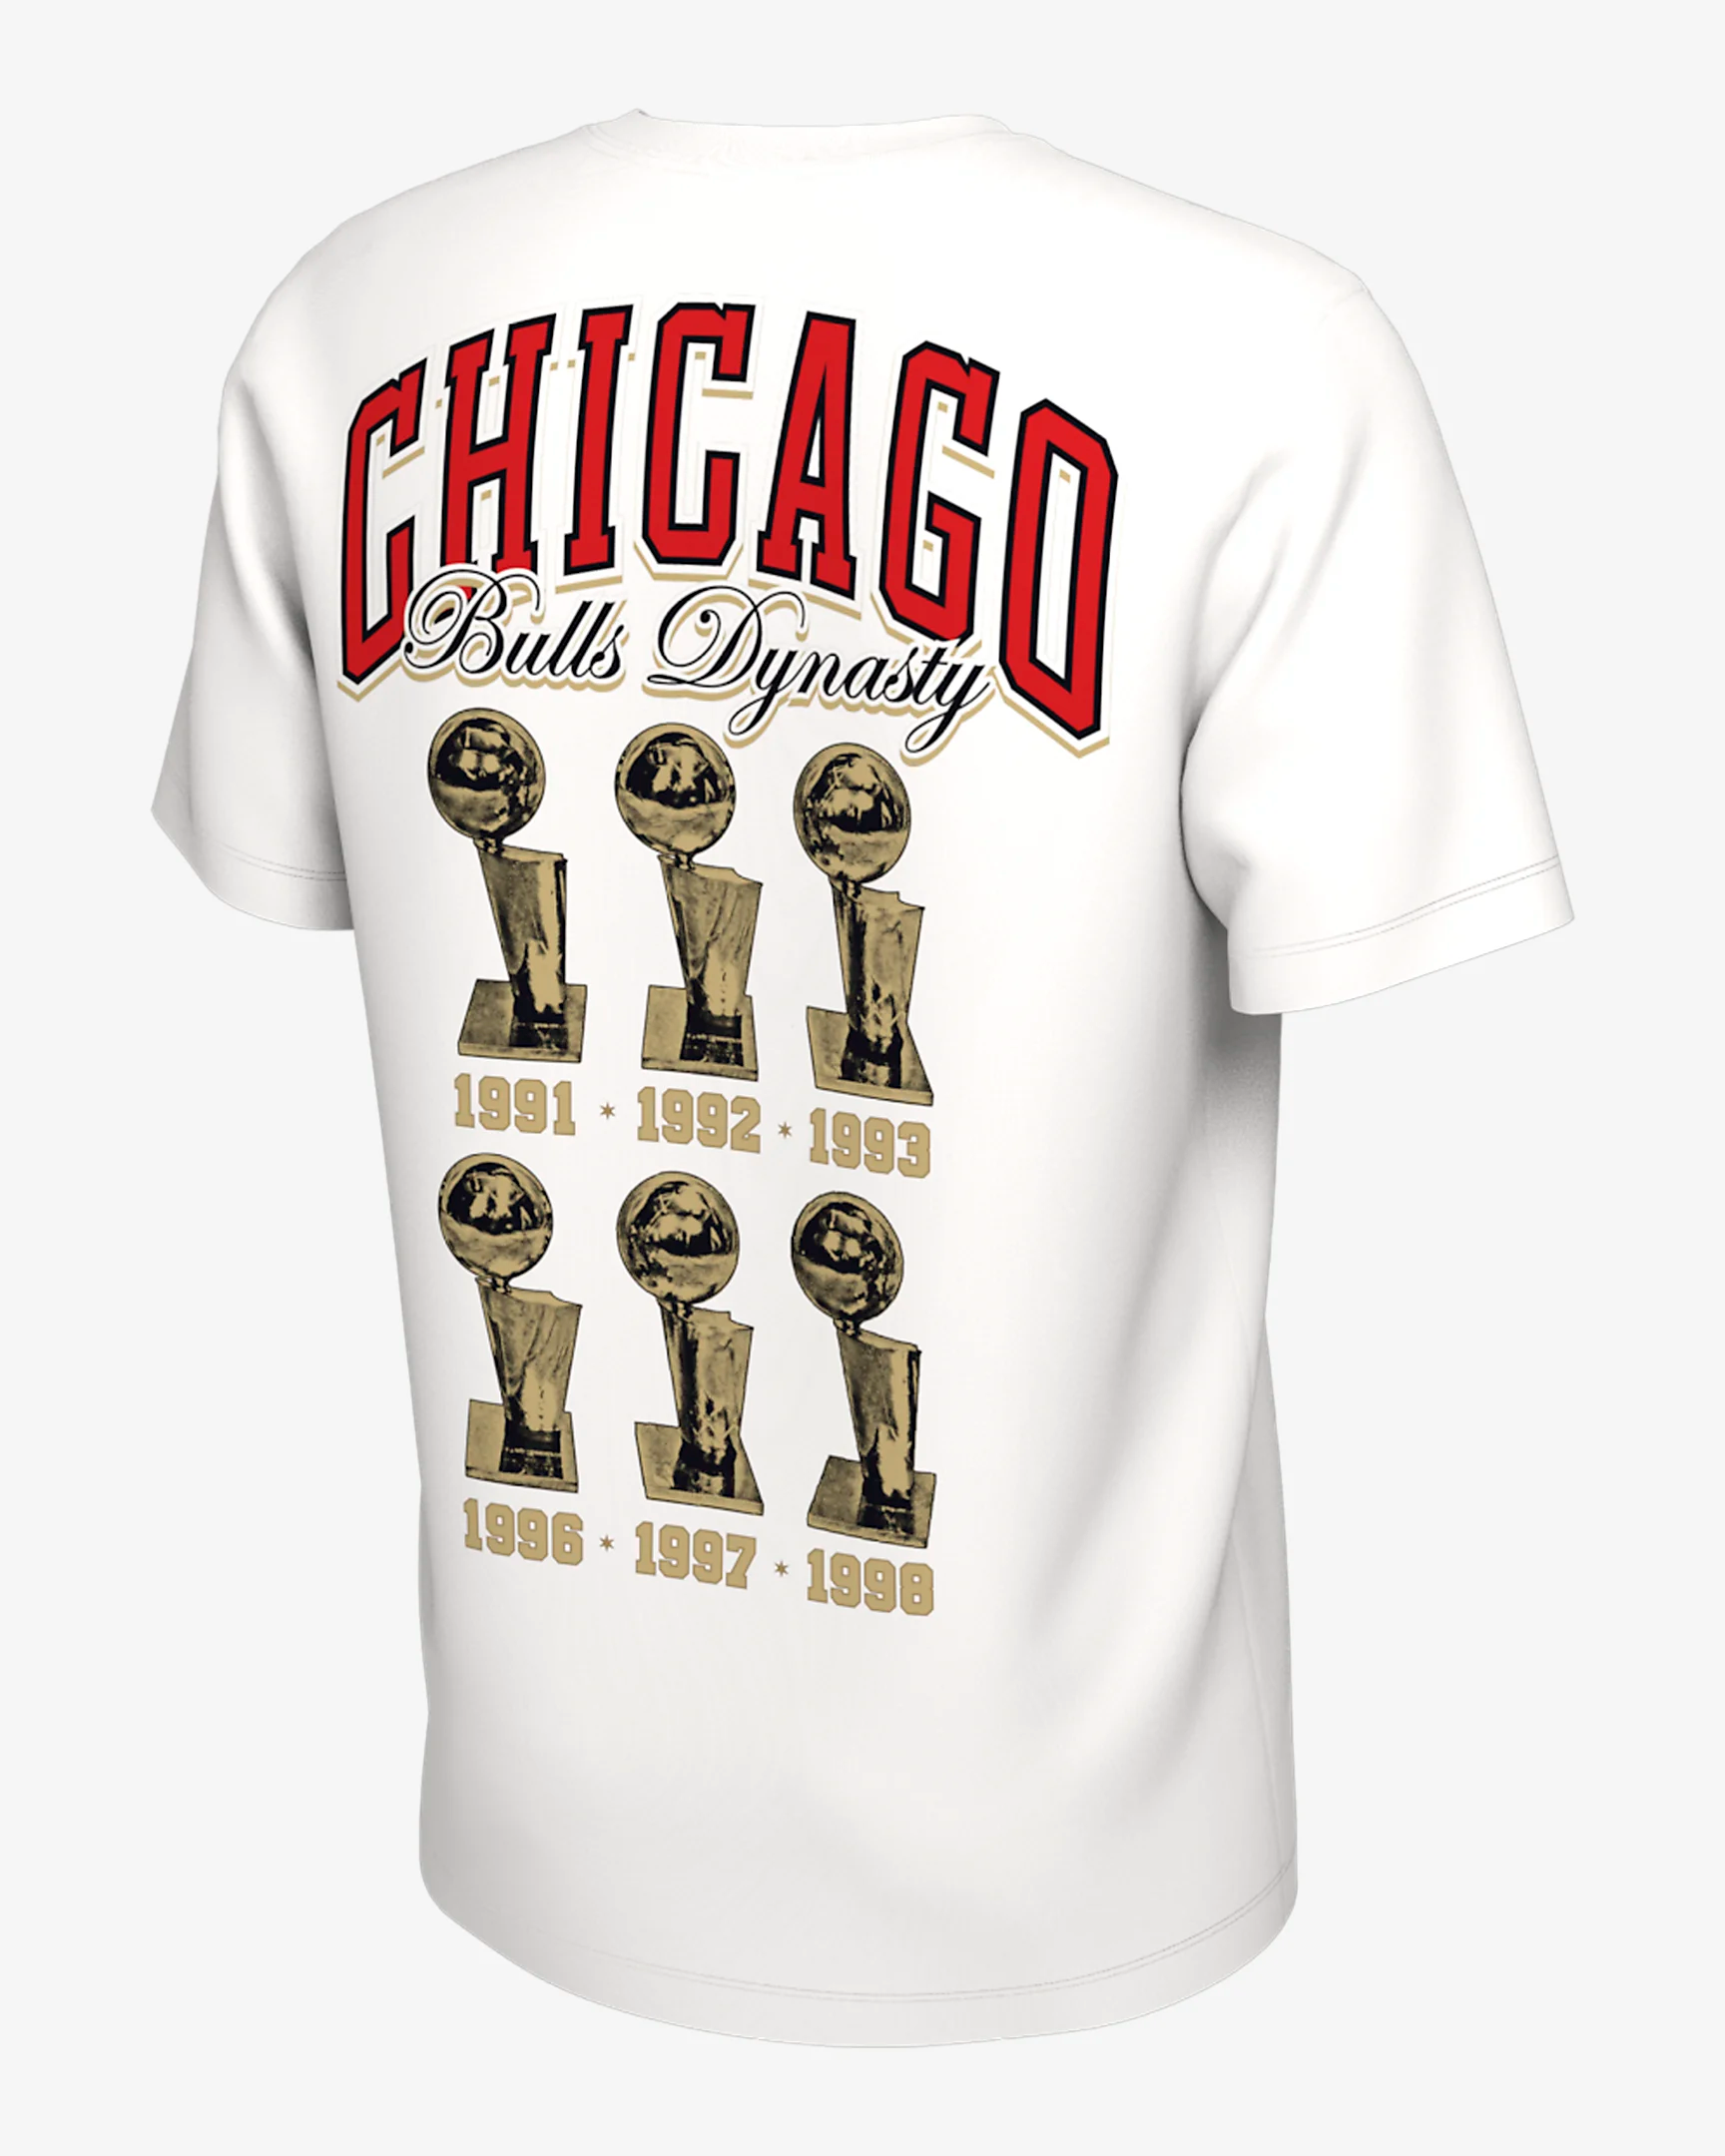 1997 Nba Champions Shirt, Chicago Bulls Shirt 1991 1992 1993 1996 Nba  Champs Shirt